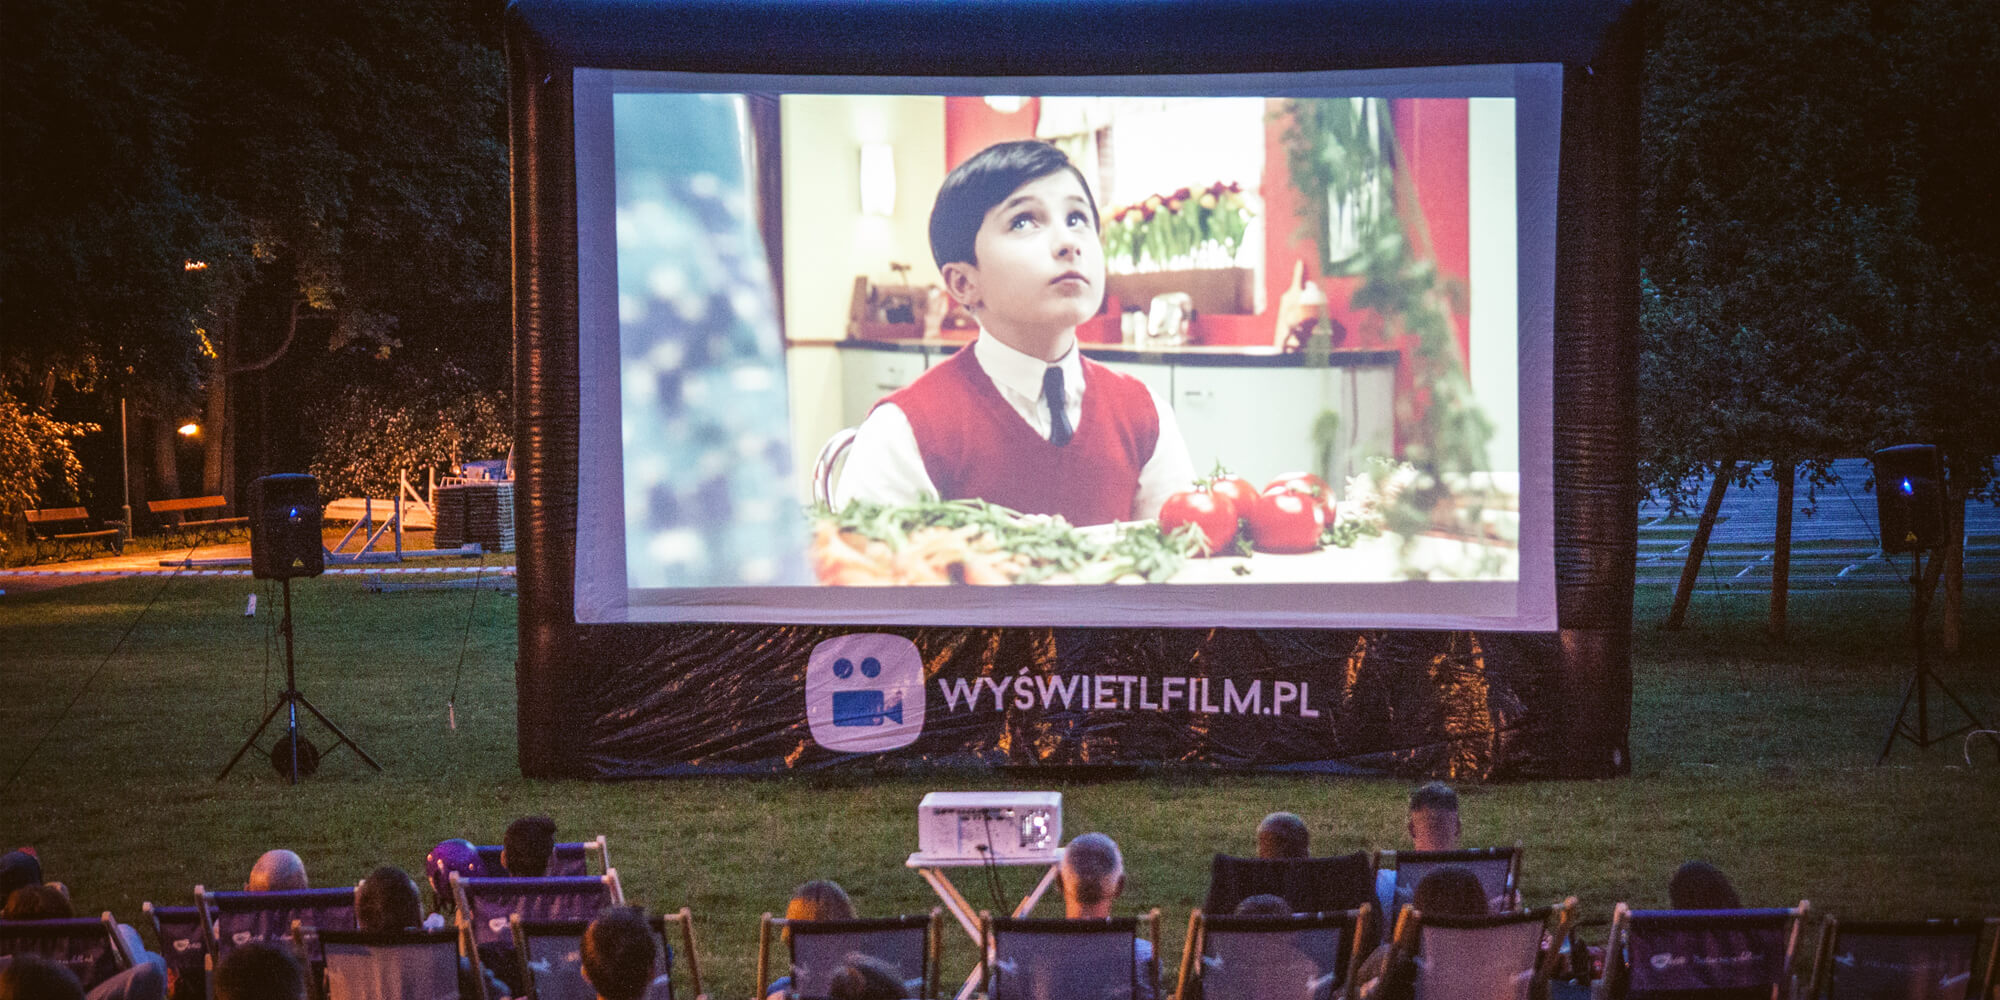 Ekran projekcyjny jako kino plenerowe w parku